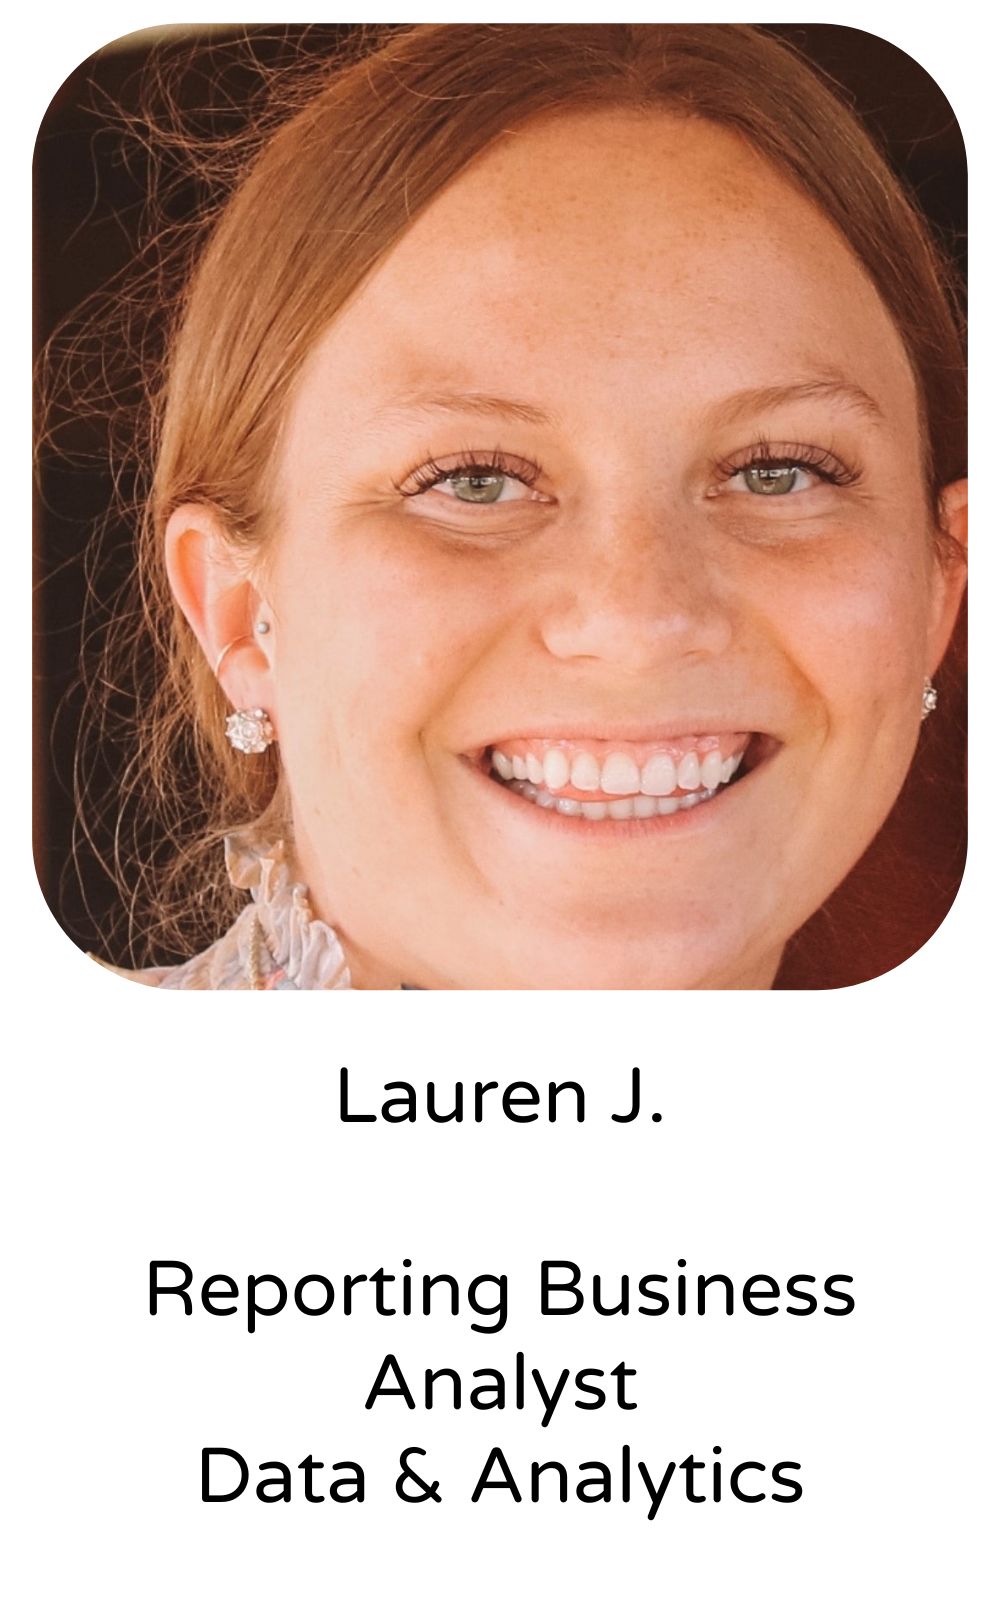 Lauren J, Reporting Business Analyst, Data & Analytics